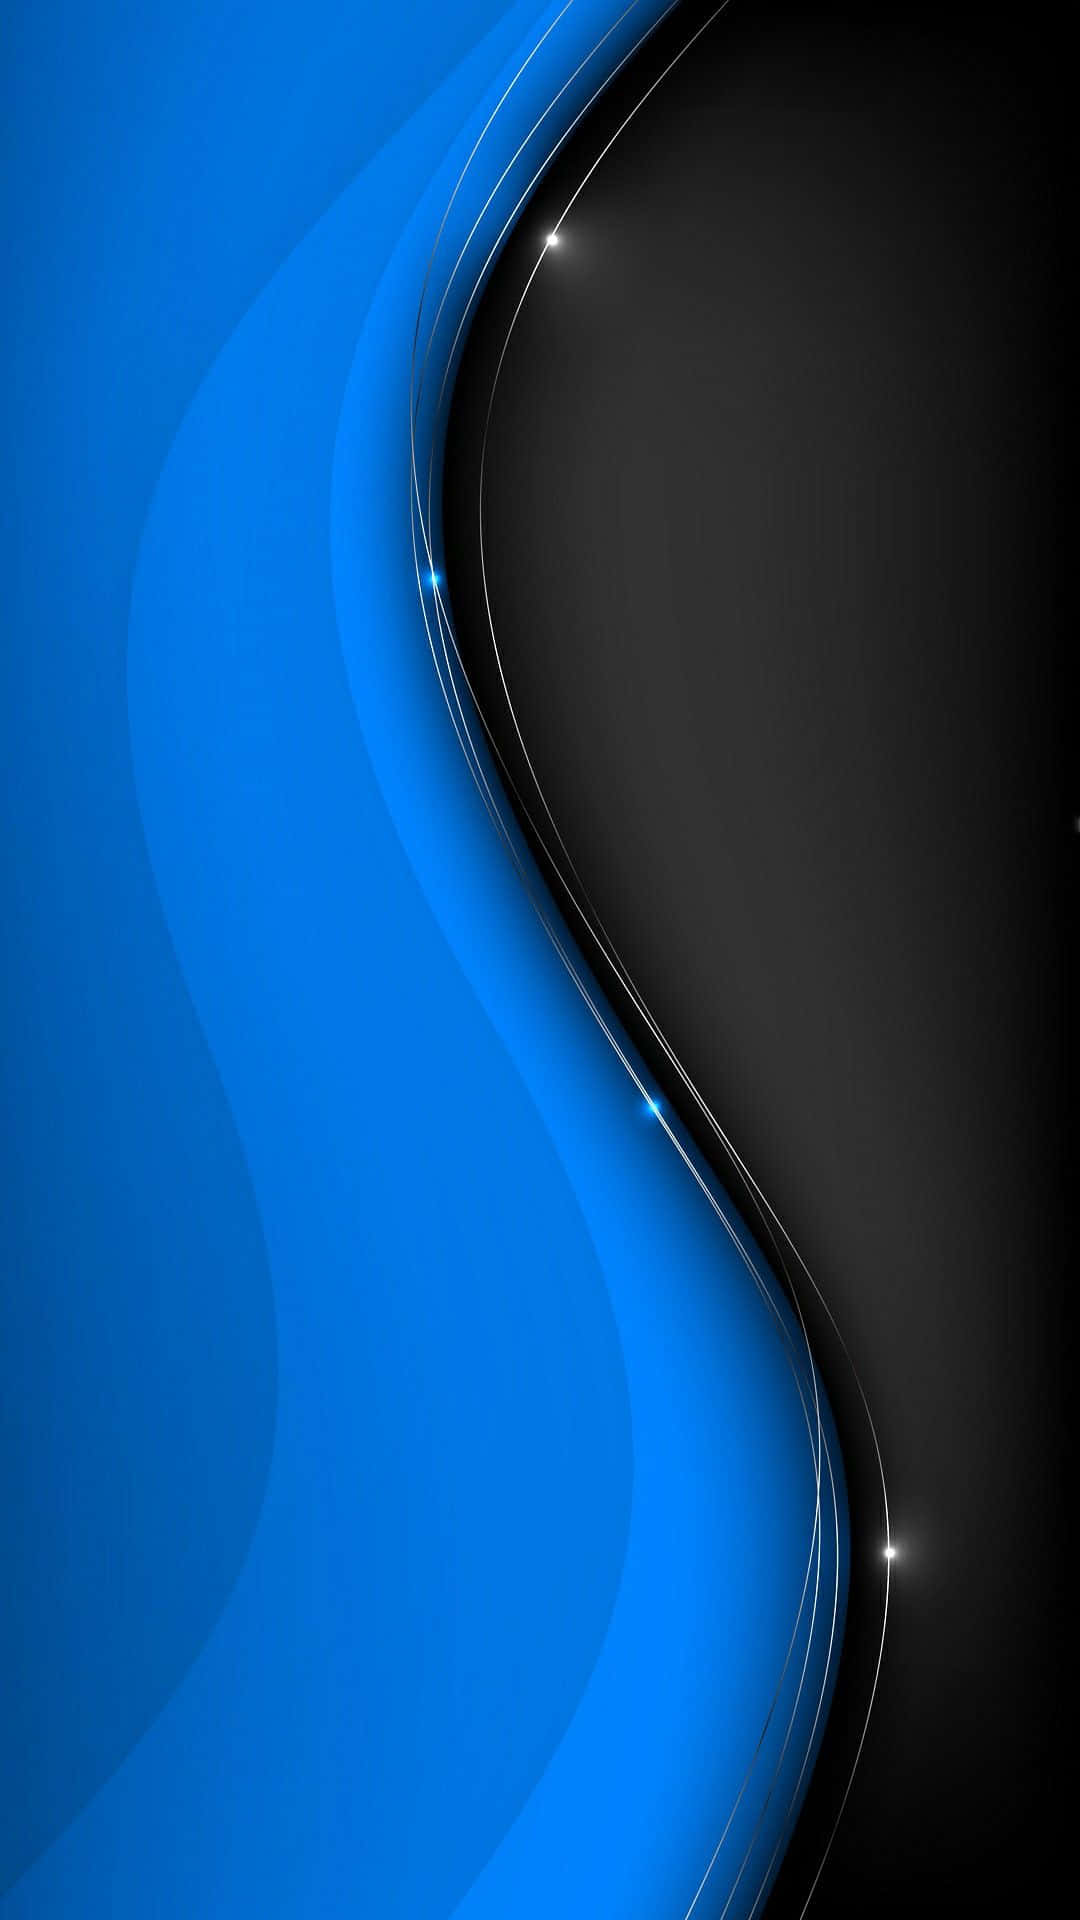 Hold altid forrest med sort og blå iPhone baggrundsbeskeder. Wallpaper